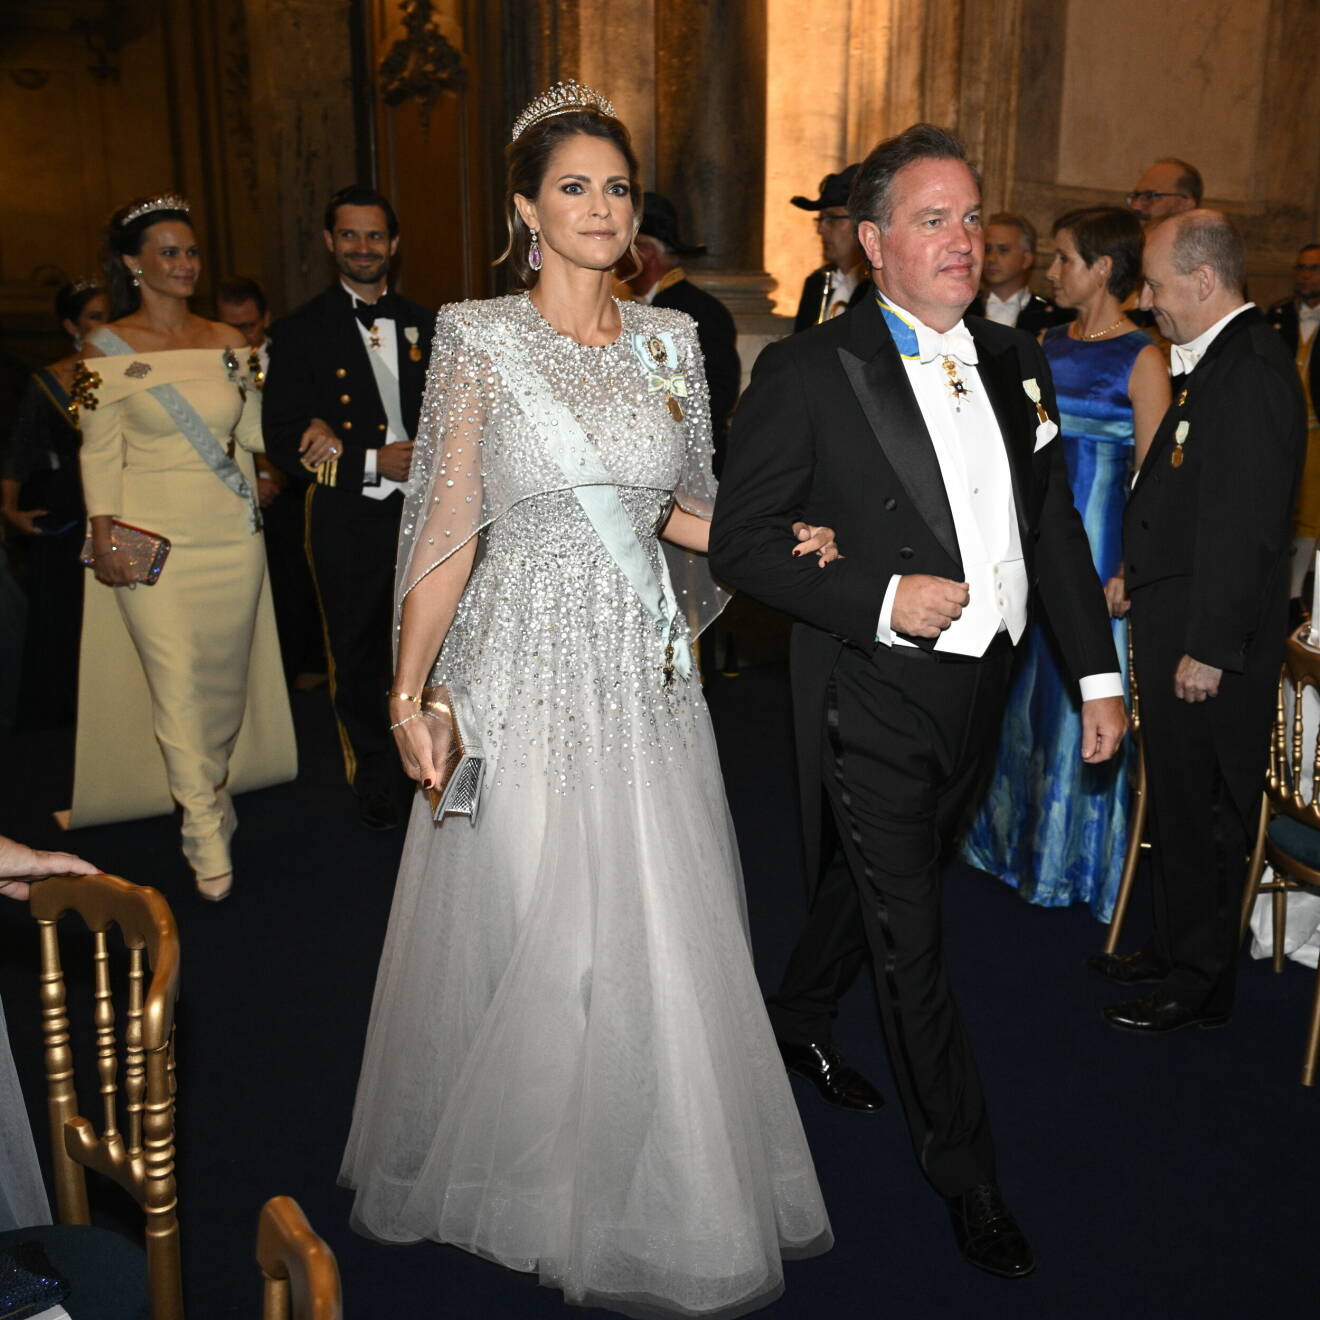 Prinsessan Madeleine och Chris O'Neill anländer till jubileumsbanketten i Rikssalen på Stockholms slott med anledning av kung Carl XVI Gustafs 50-årsjubileum på tronen.